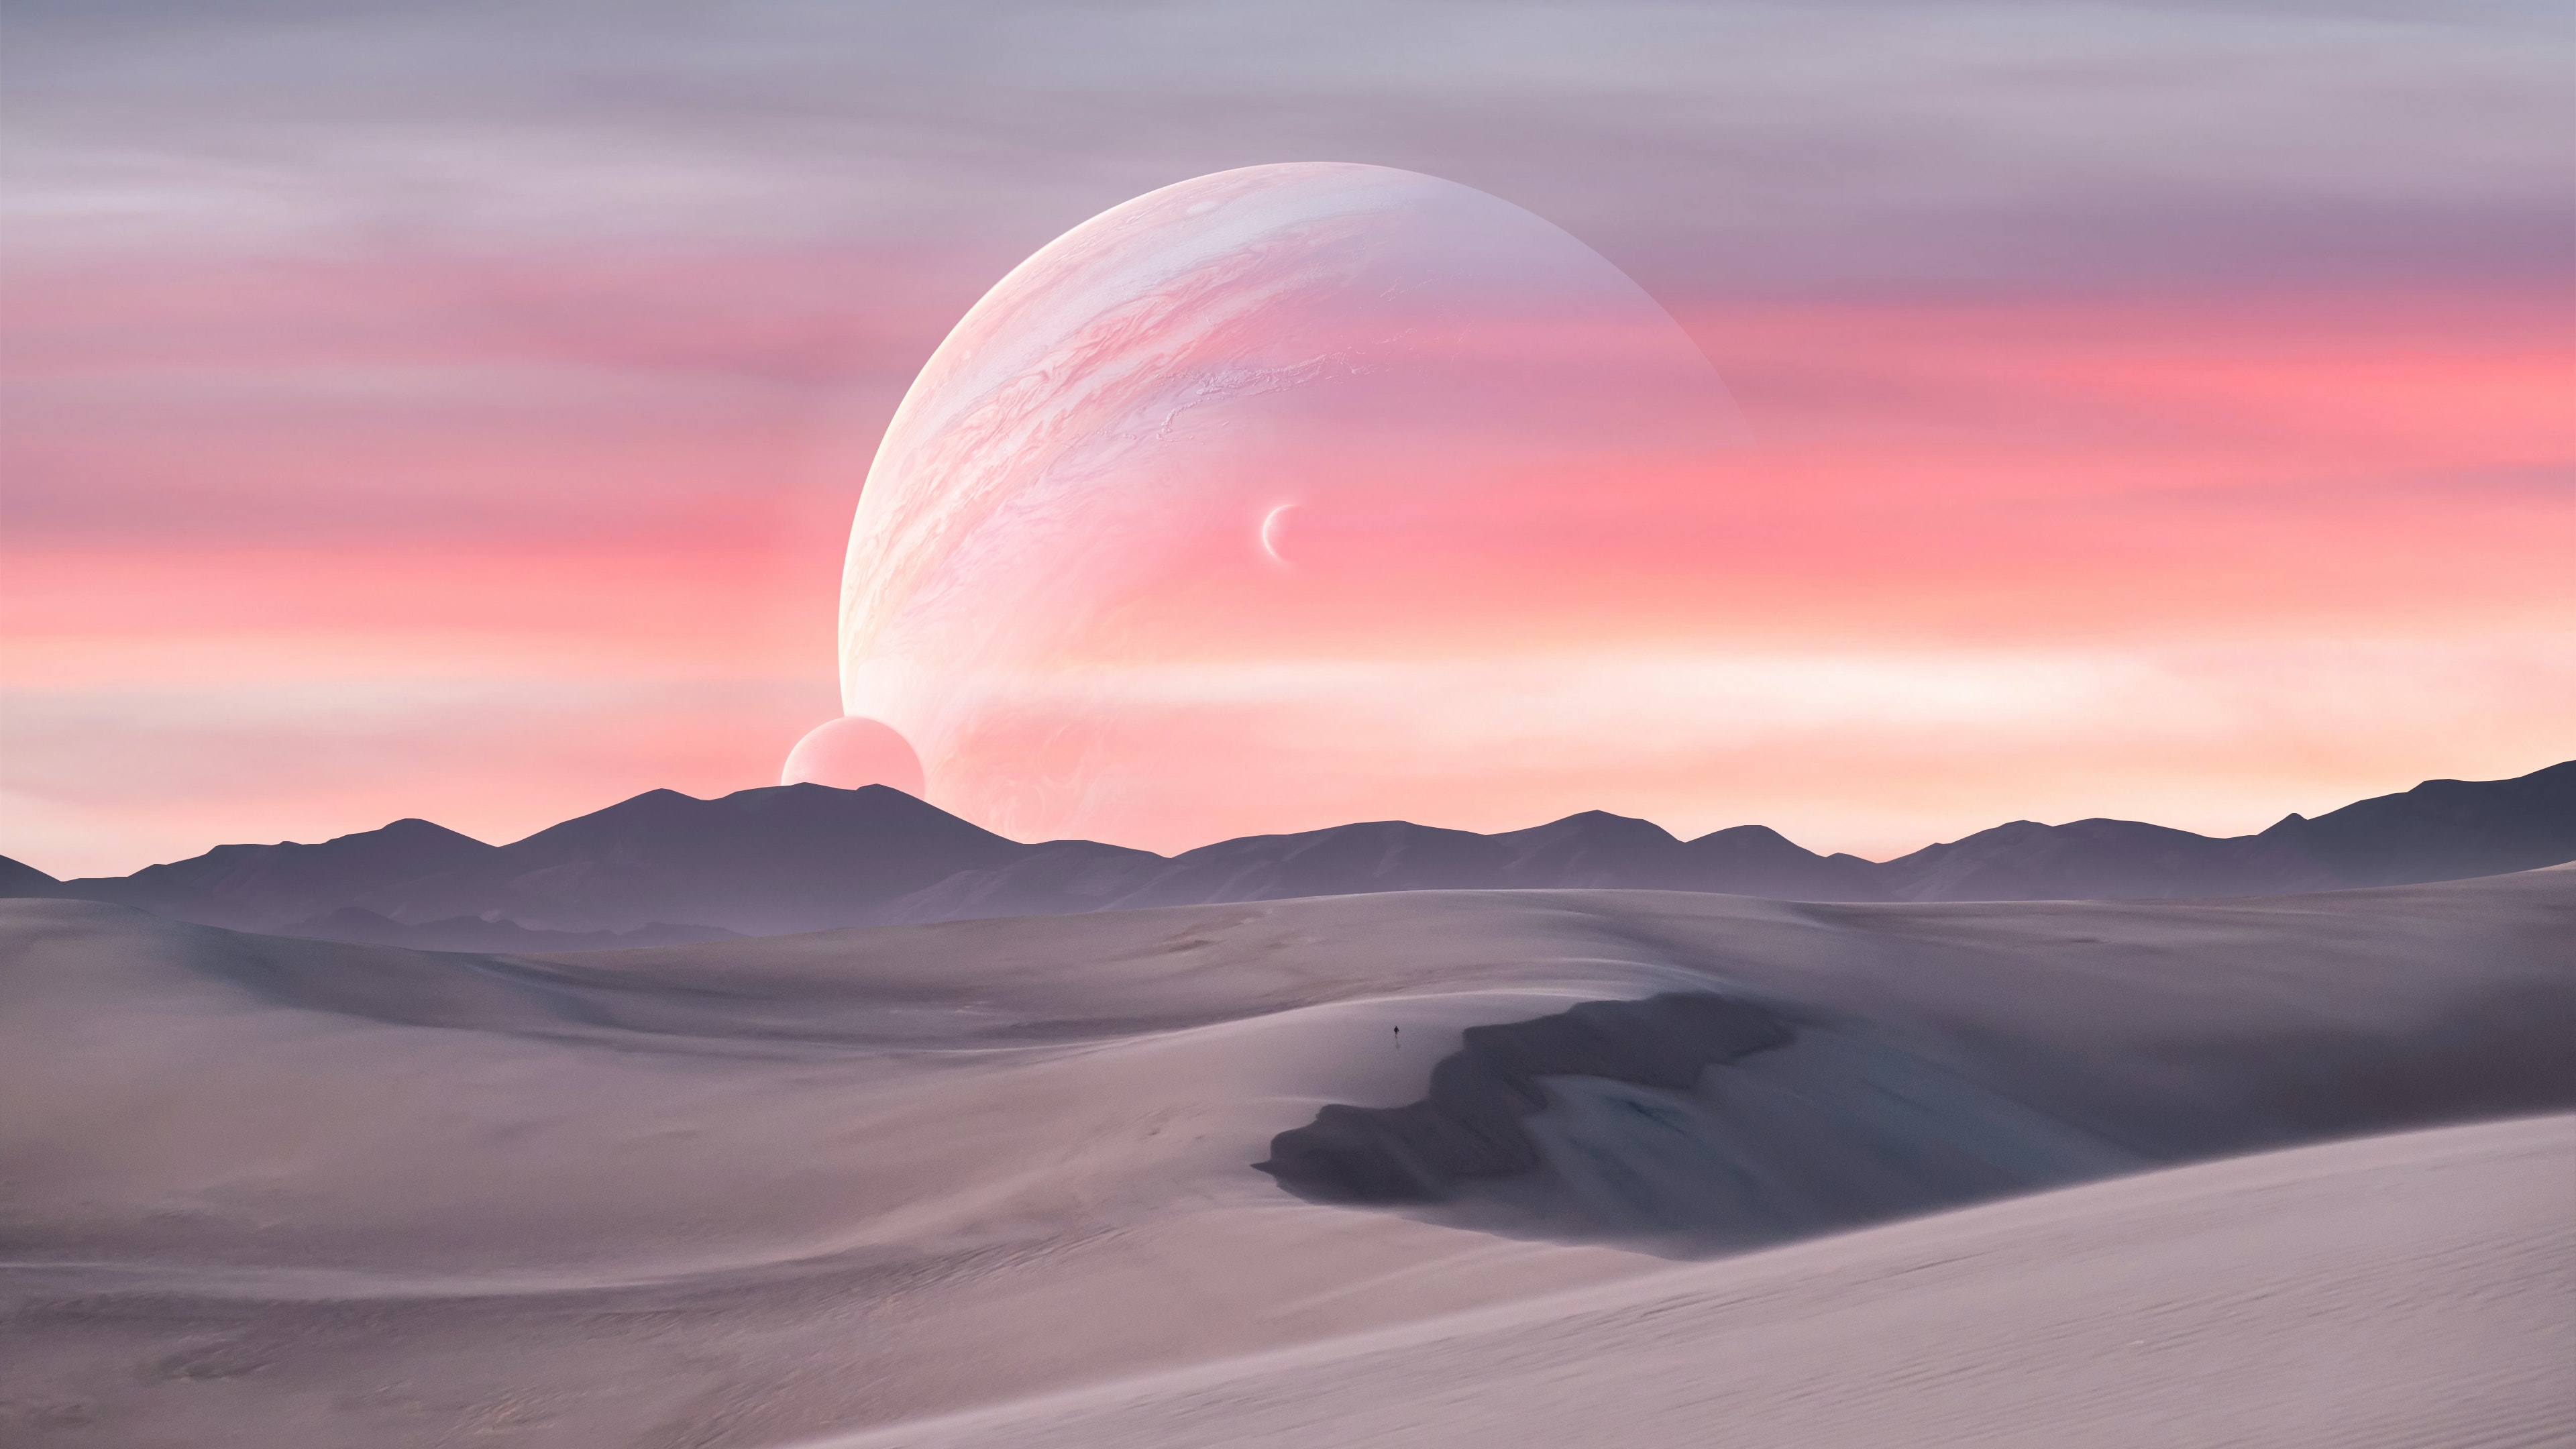 Digital Digital Art Artwork Illustration Desert Sand Nature Planet Space Sky Clouds Jupiter 3840x2160